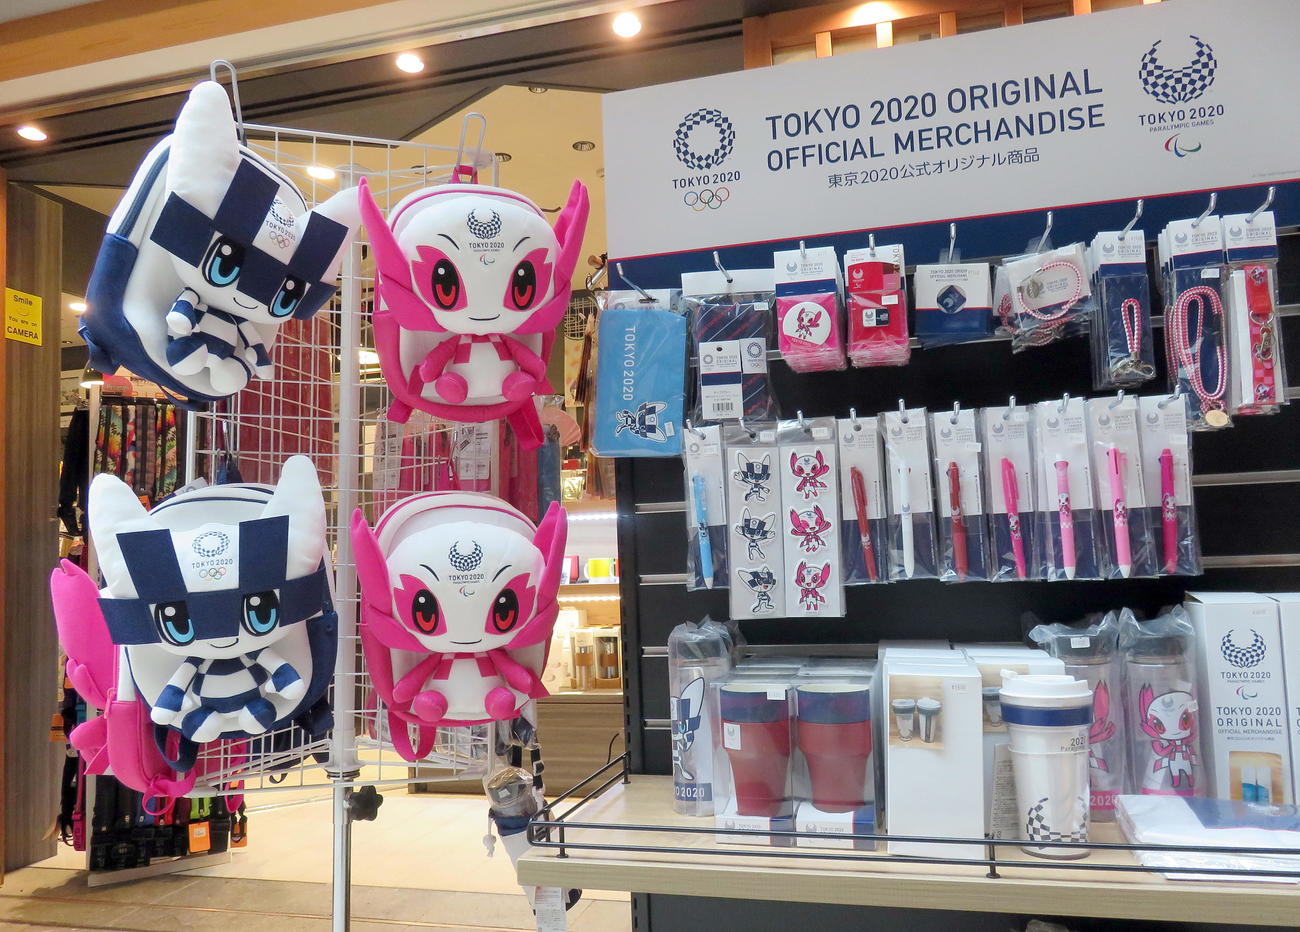 外国人にも人気がある東京2020マスコットキャラクター「ミライトワ」や「ソメイティ」のオリジナル商品各種